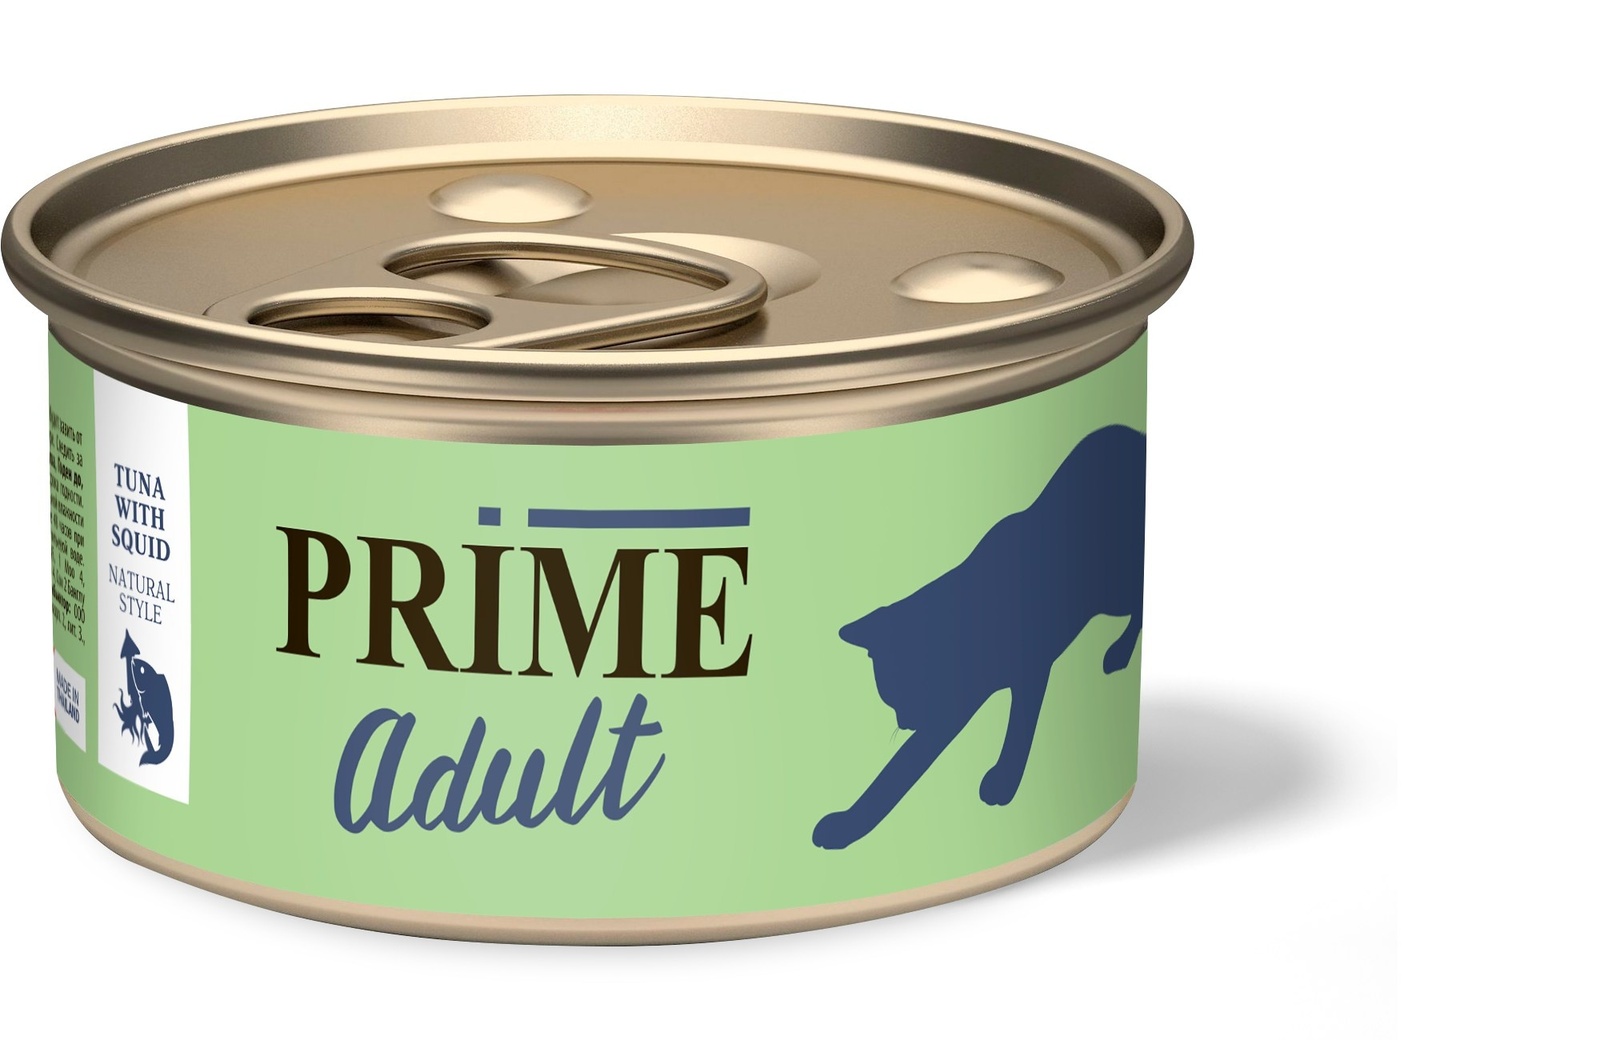 Prime консервы для кошек Тунец с кальмаром в собственном соку (70 г) Prime консервы для кошек Тунец с кальмаром в собственном соку (70 г) - фото 1